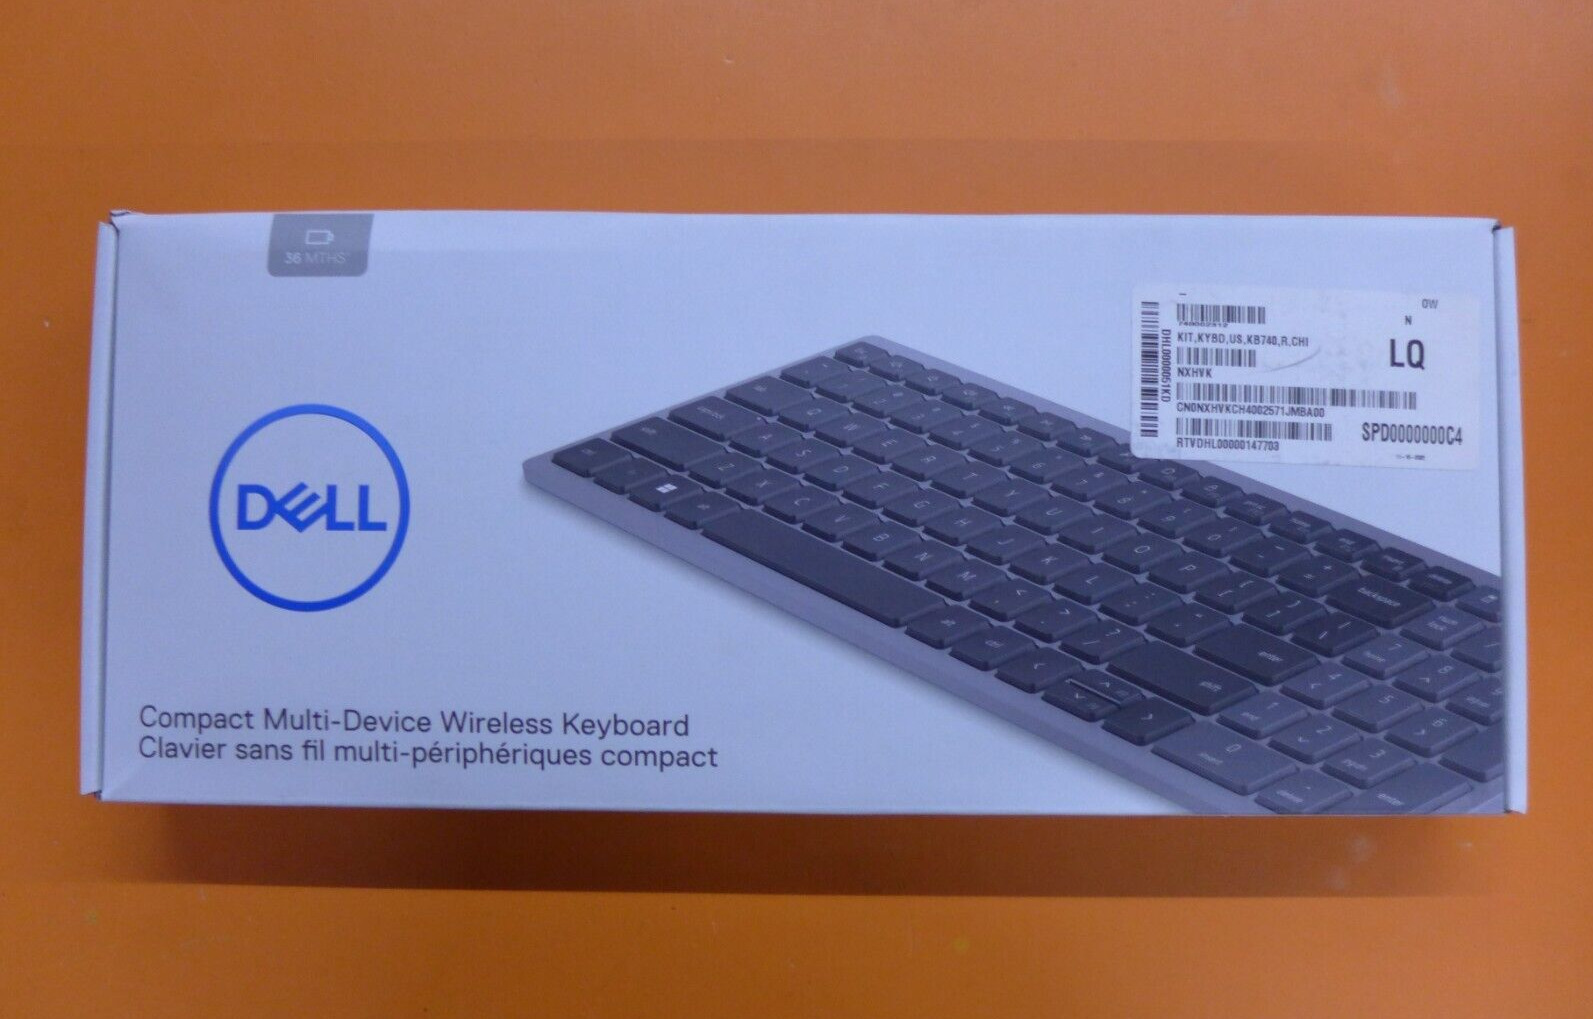 Genuine Dell Compact Multi-Device Wireless Keyboard KB740 NXHVK